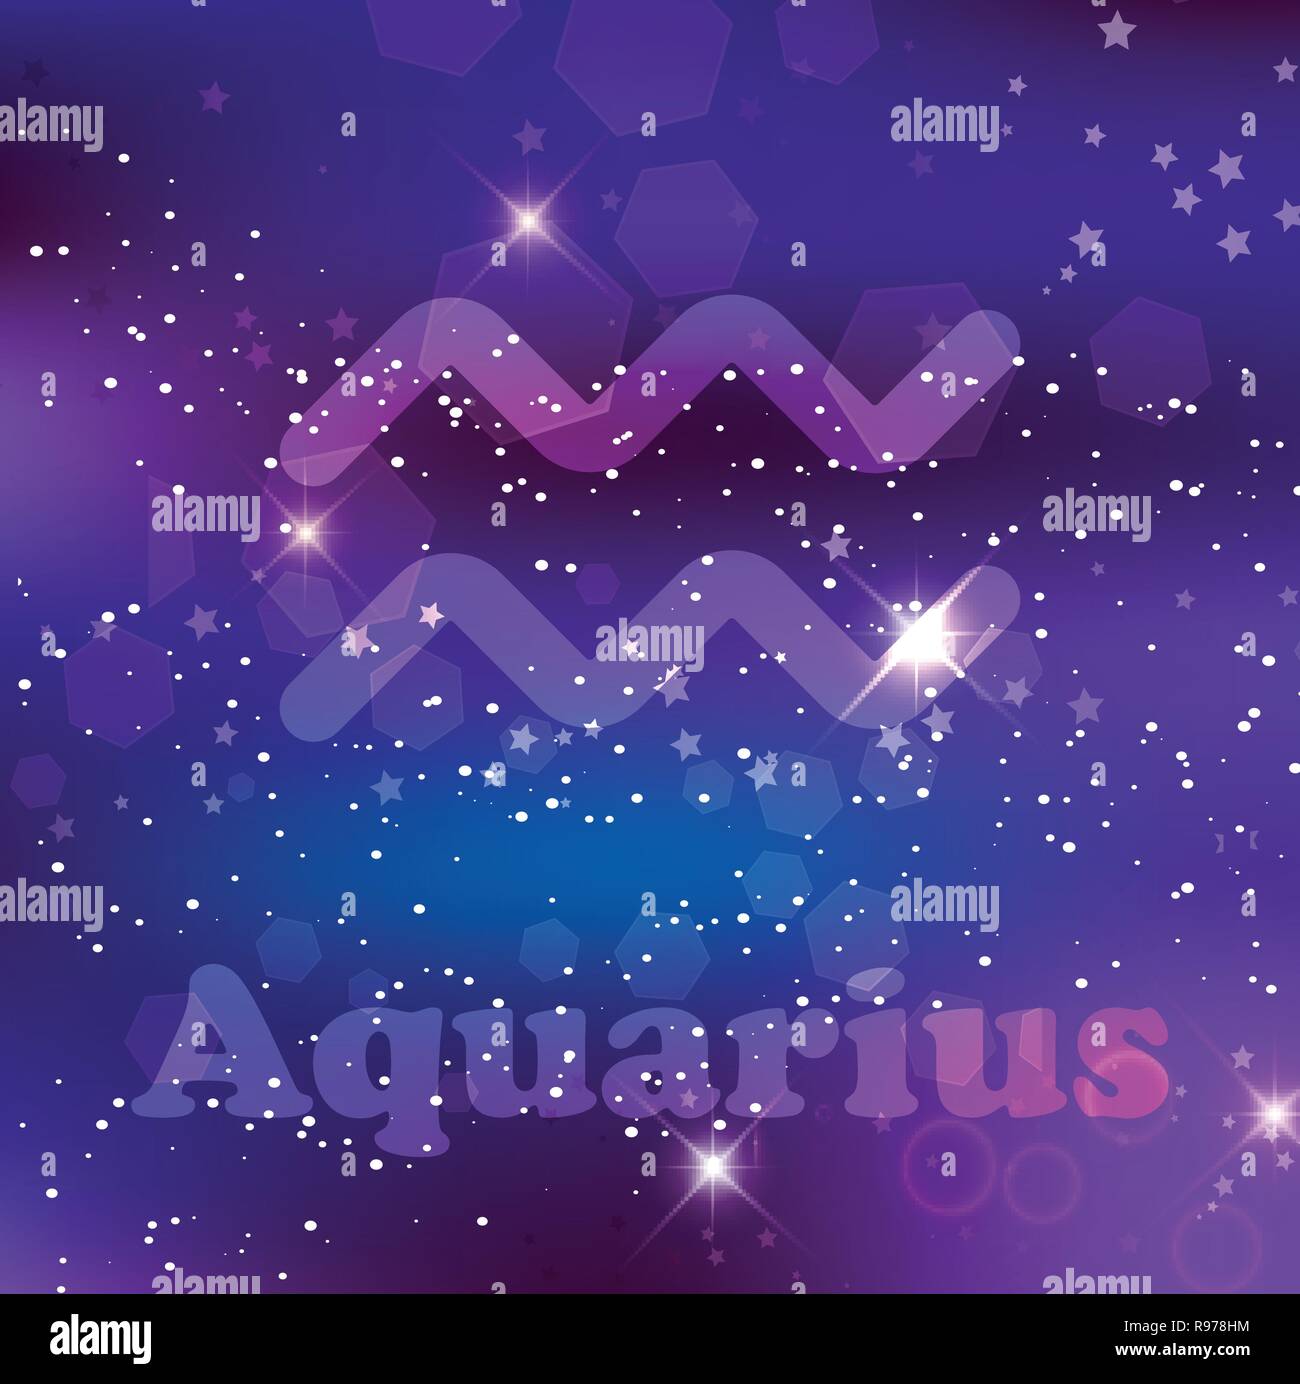 Aquarius segno zodiacale e costellazione su una cosmic blu scuro dello sfondo viola con stelle luccicanti e nebulosa. Illustrazione Vettoriale, banner, poster, auto Illustrazione Vettoriale